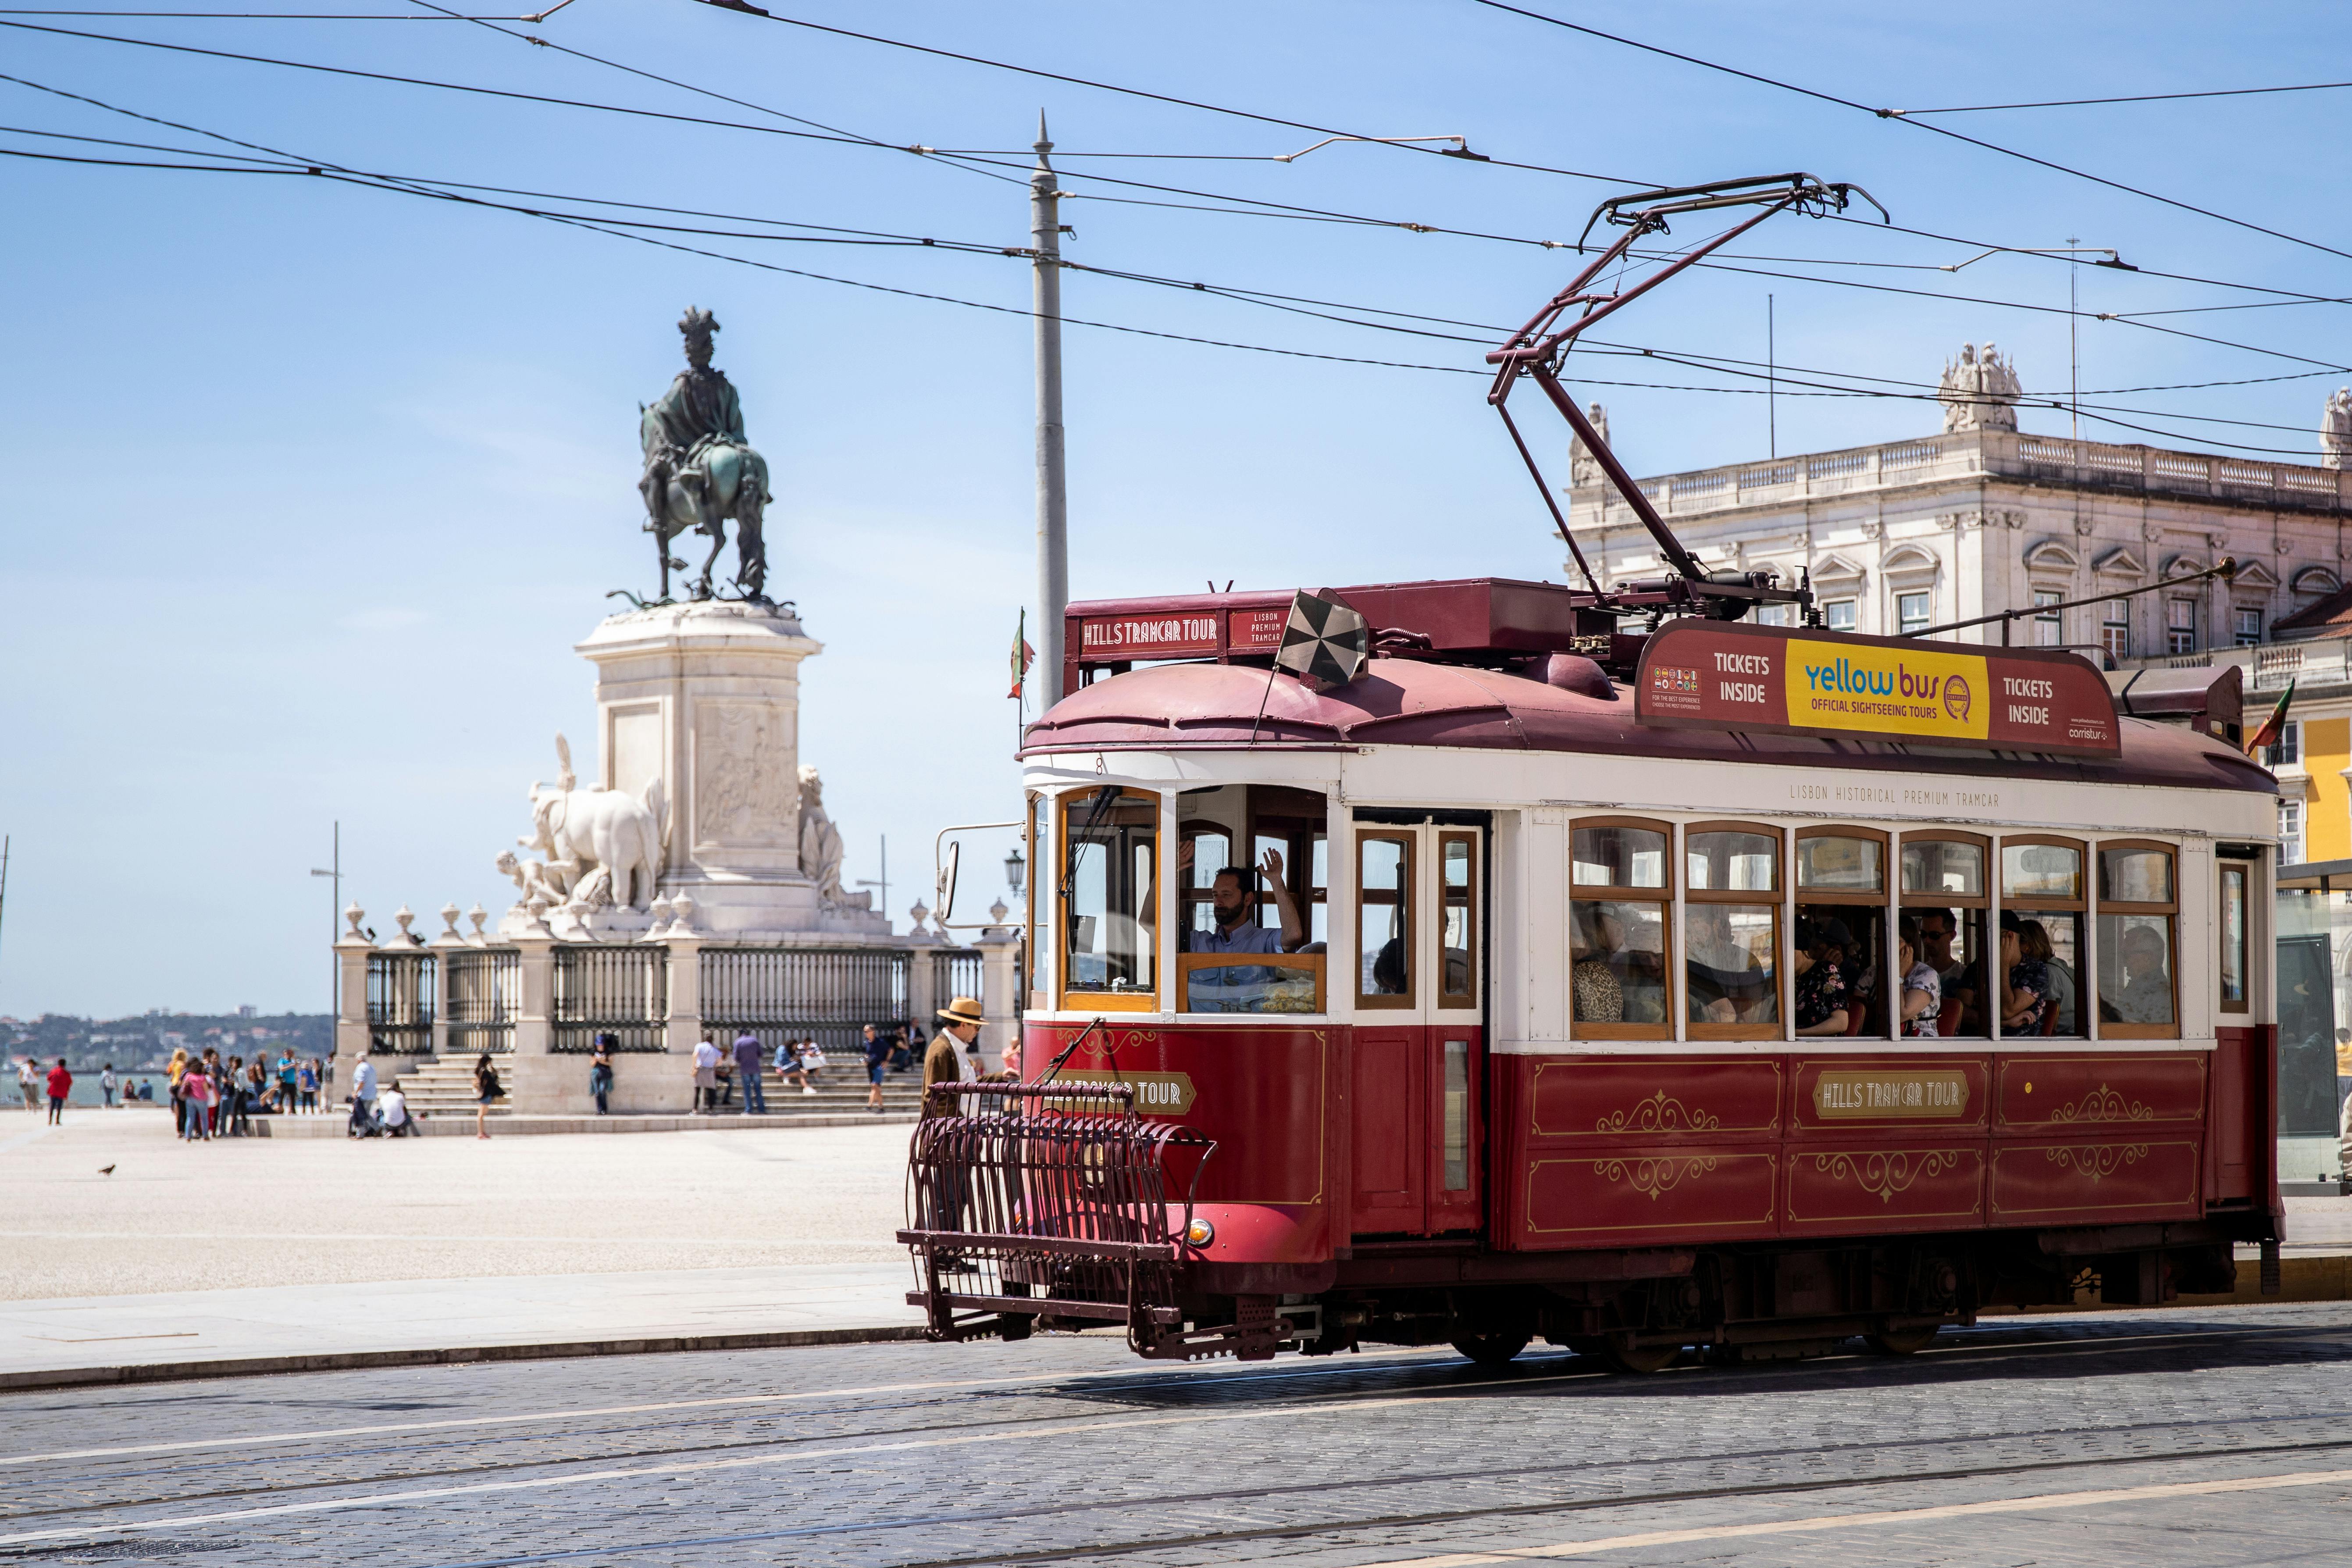 Bilety łączone na autobus i tramwaj w Lizbonie typu hop-on hop-off